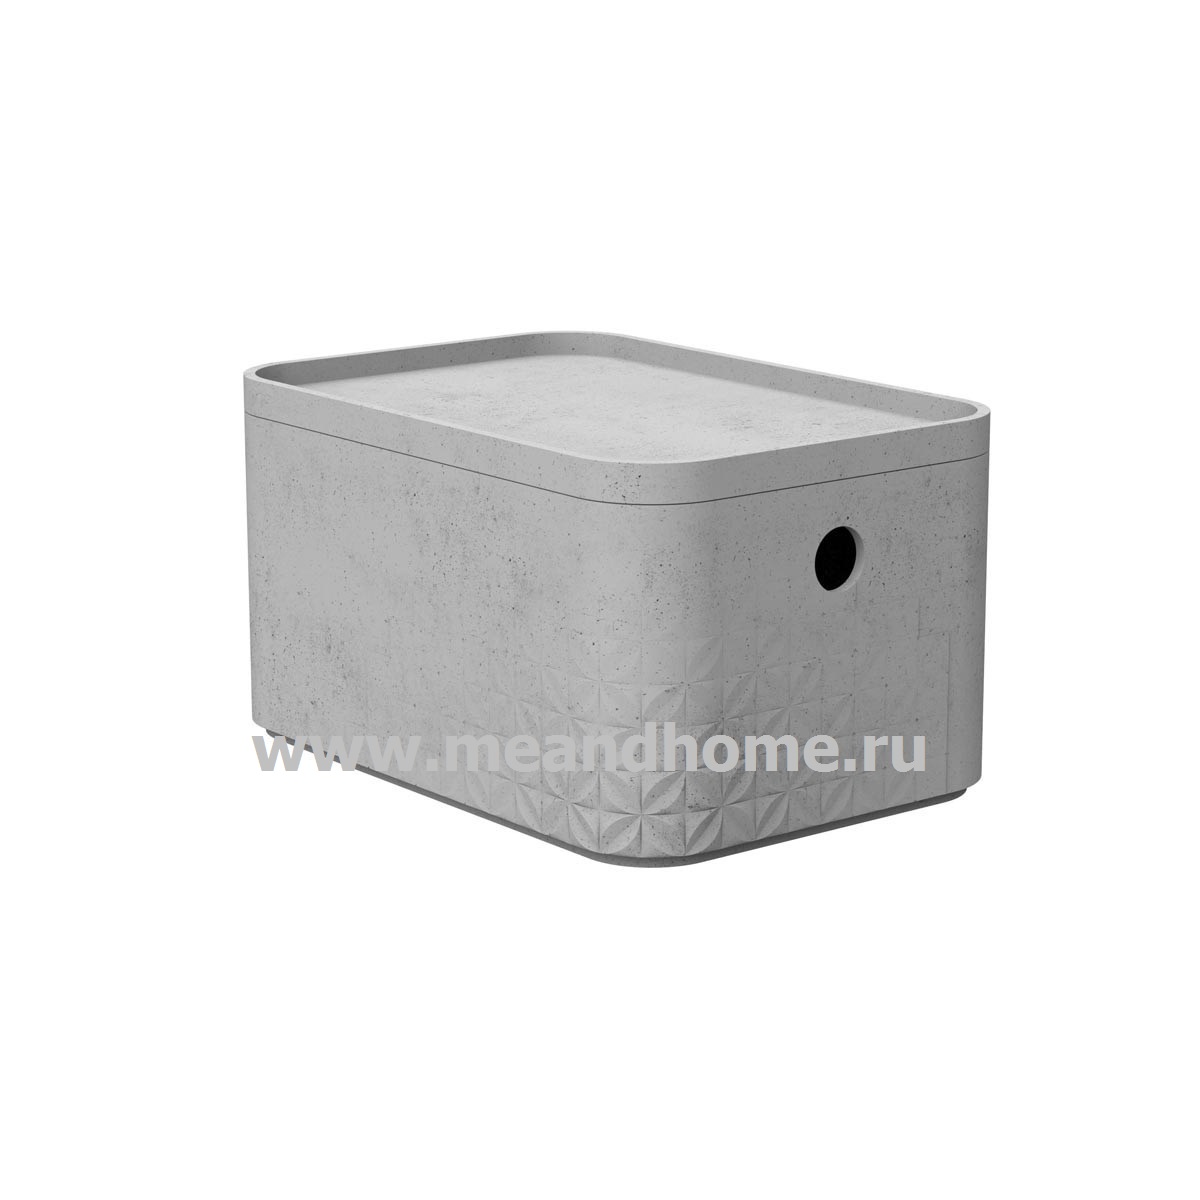 Контейнер для хранения Beton S 4л с крышкой прямоугольный светло-серый CURVER 243399 в интернет-магазине meandhome.ru